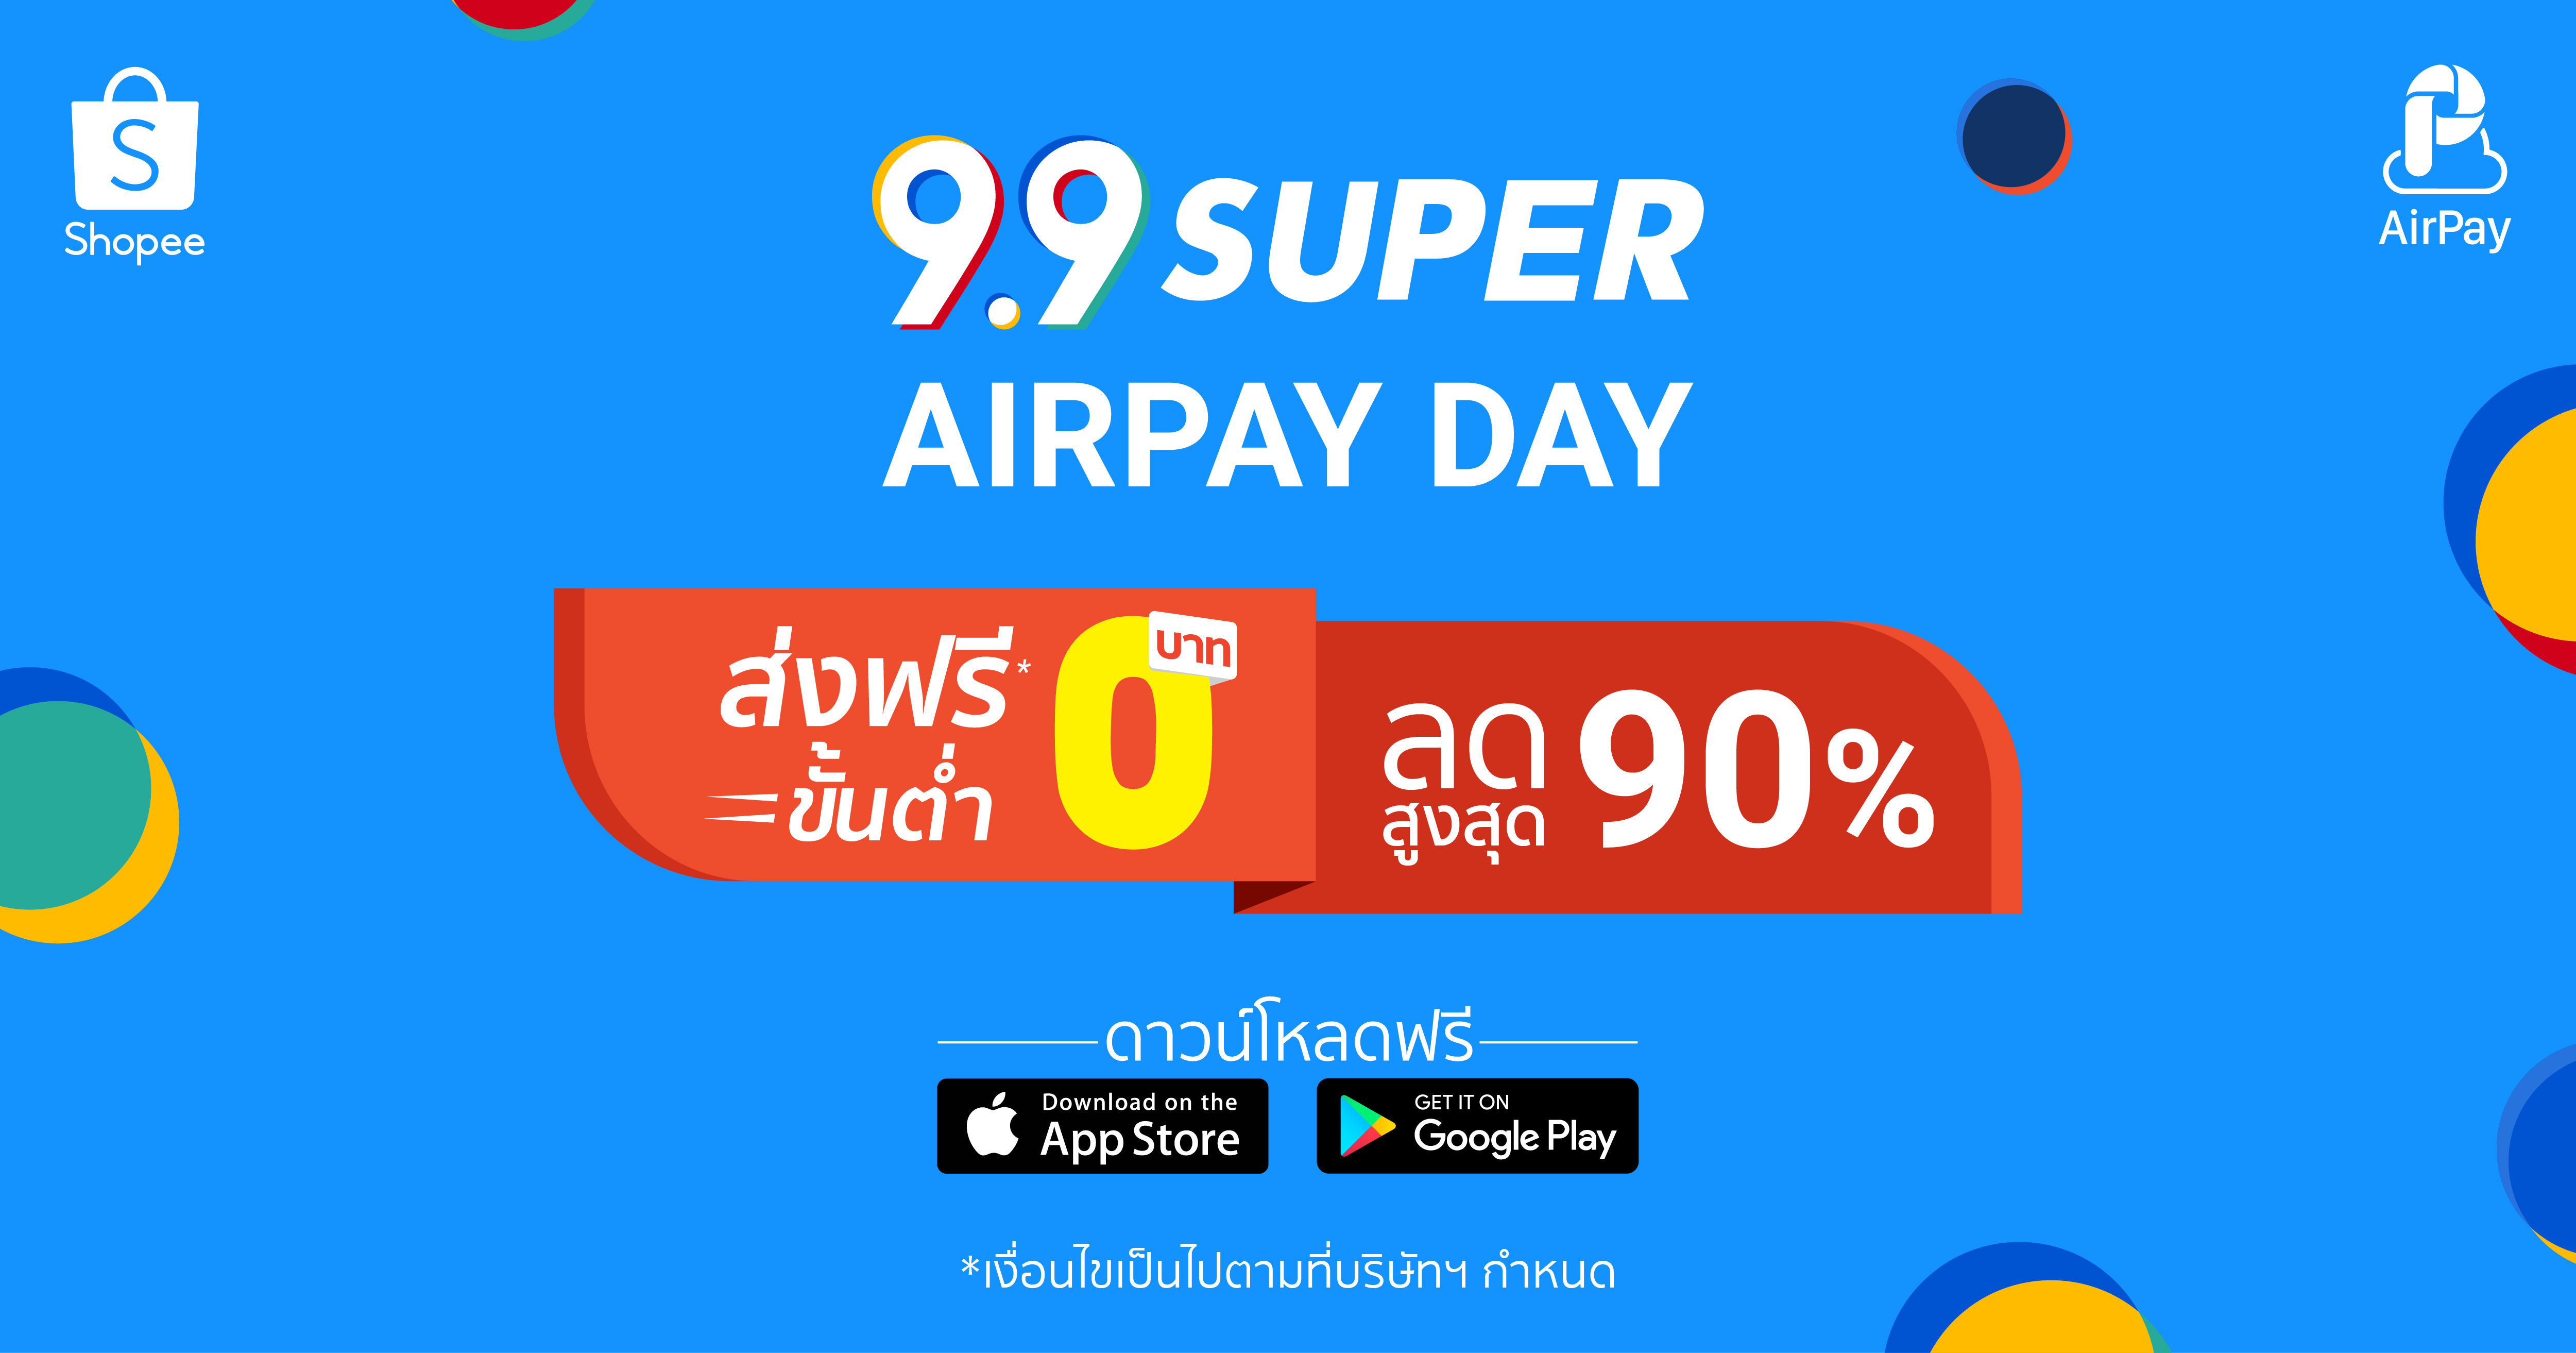 'ช้อปปี้ เซอร์ไพรส์นักช้อปต่อเนื่องในมหกรรมช้อปปิ้ง 'Shopee 9.9 Super Shopping Day เดินหน้าส่งแคมเปญพิเศษ AirPay Day